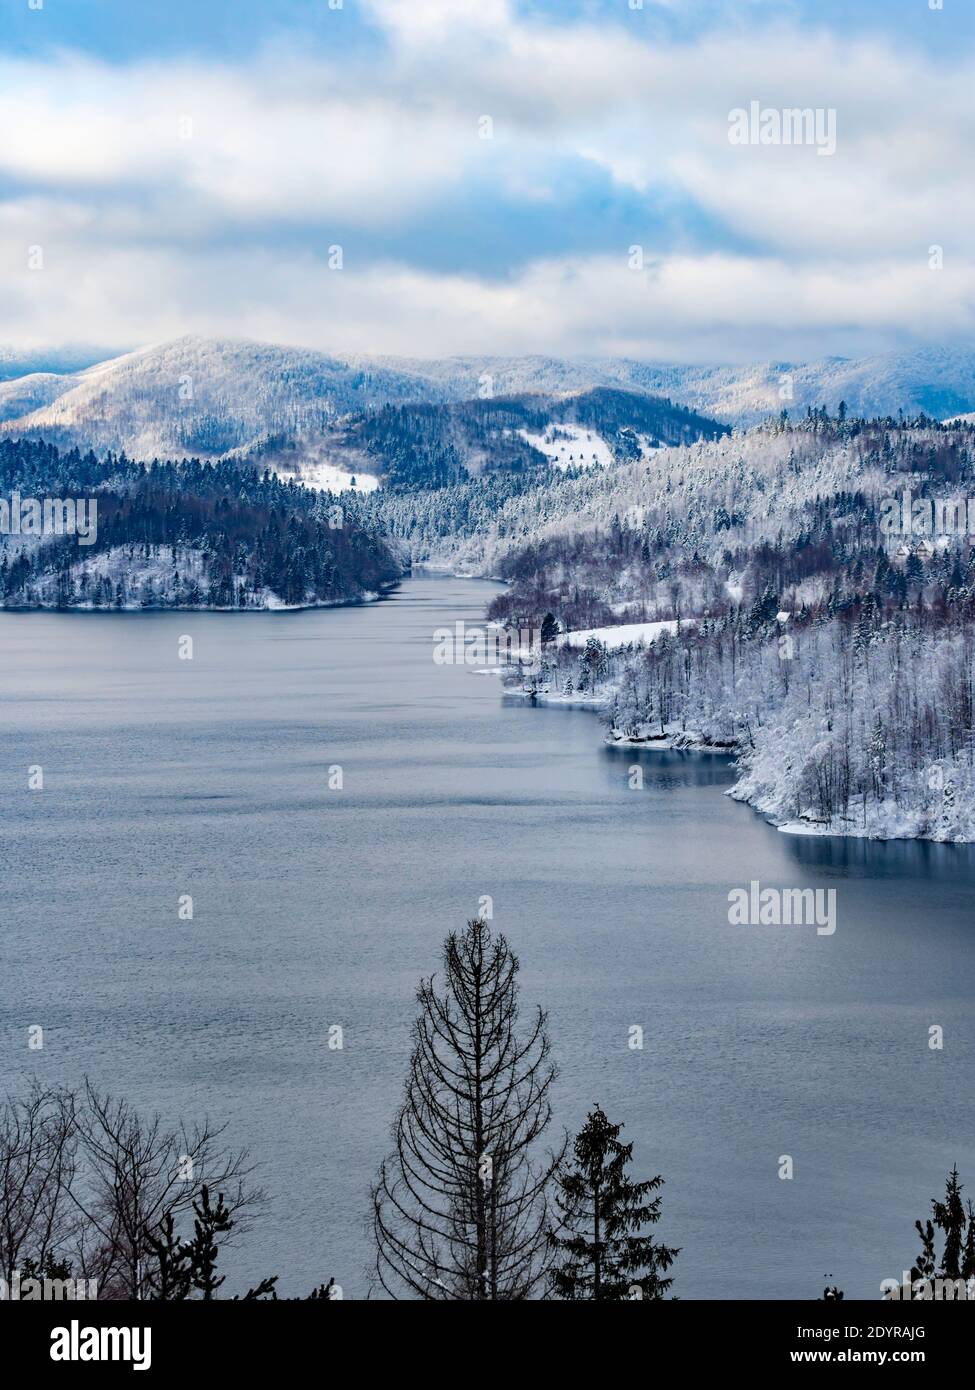 Winter show landscape scenery scenic panorama Lokve lake Lokvarsko jezero in Croatia Europe Stock Photo